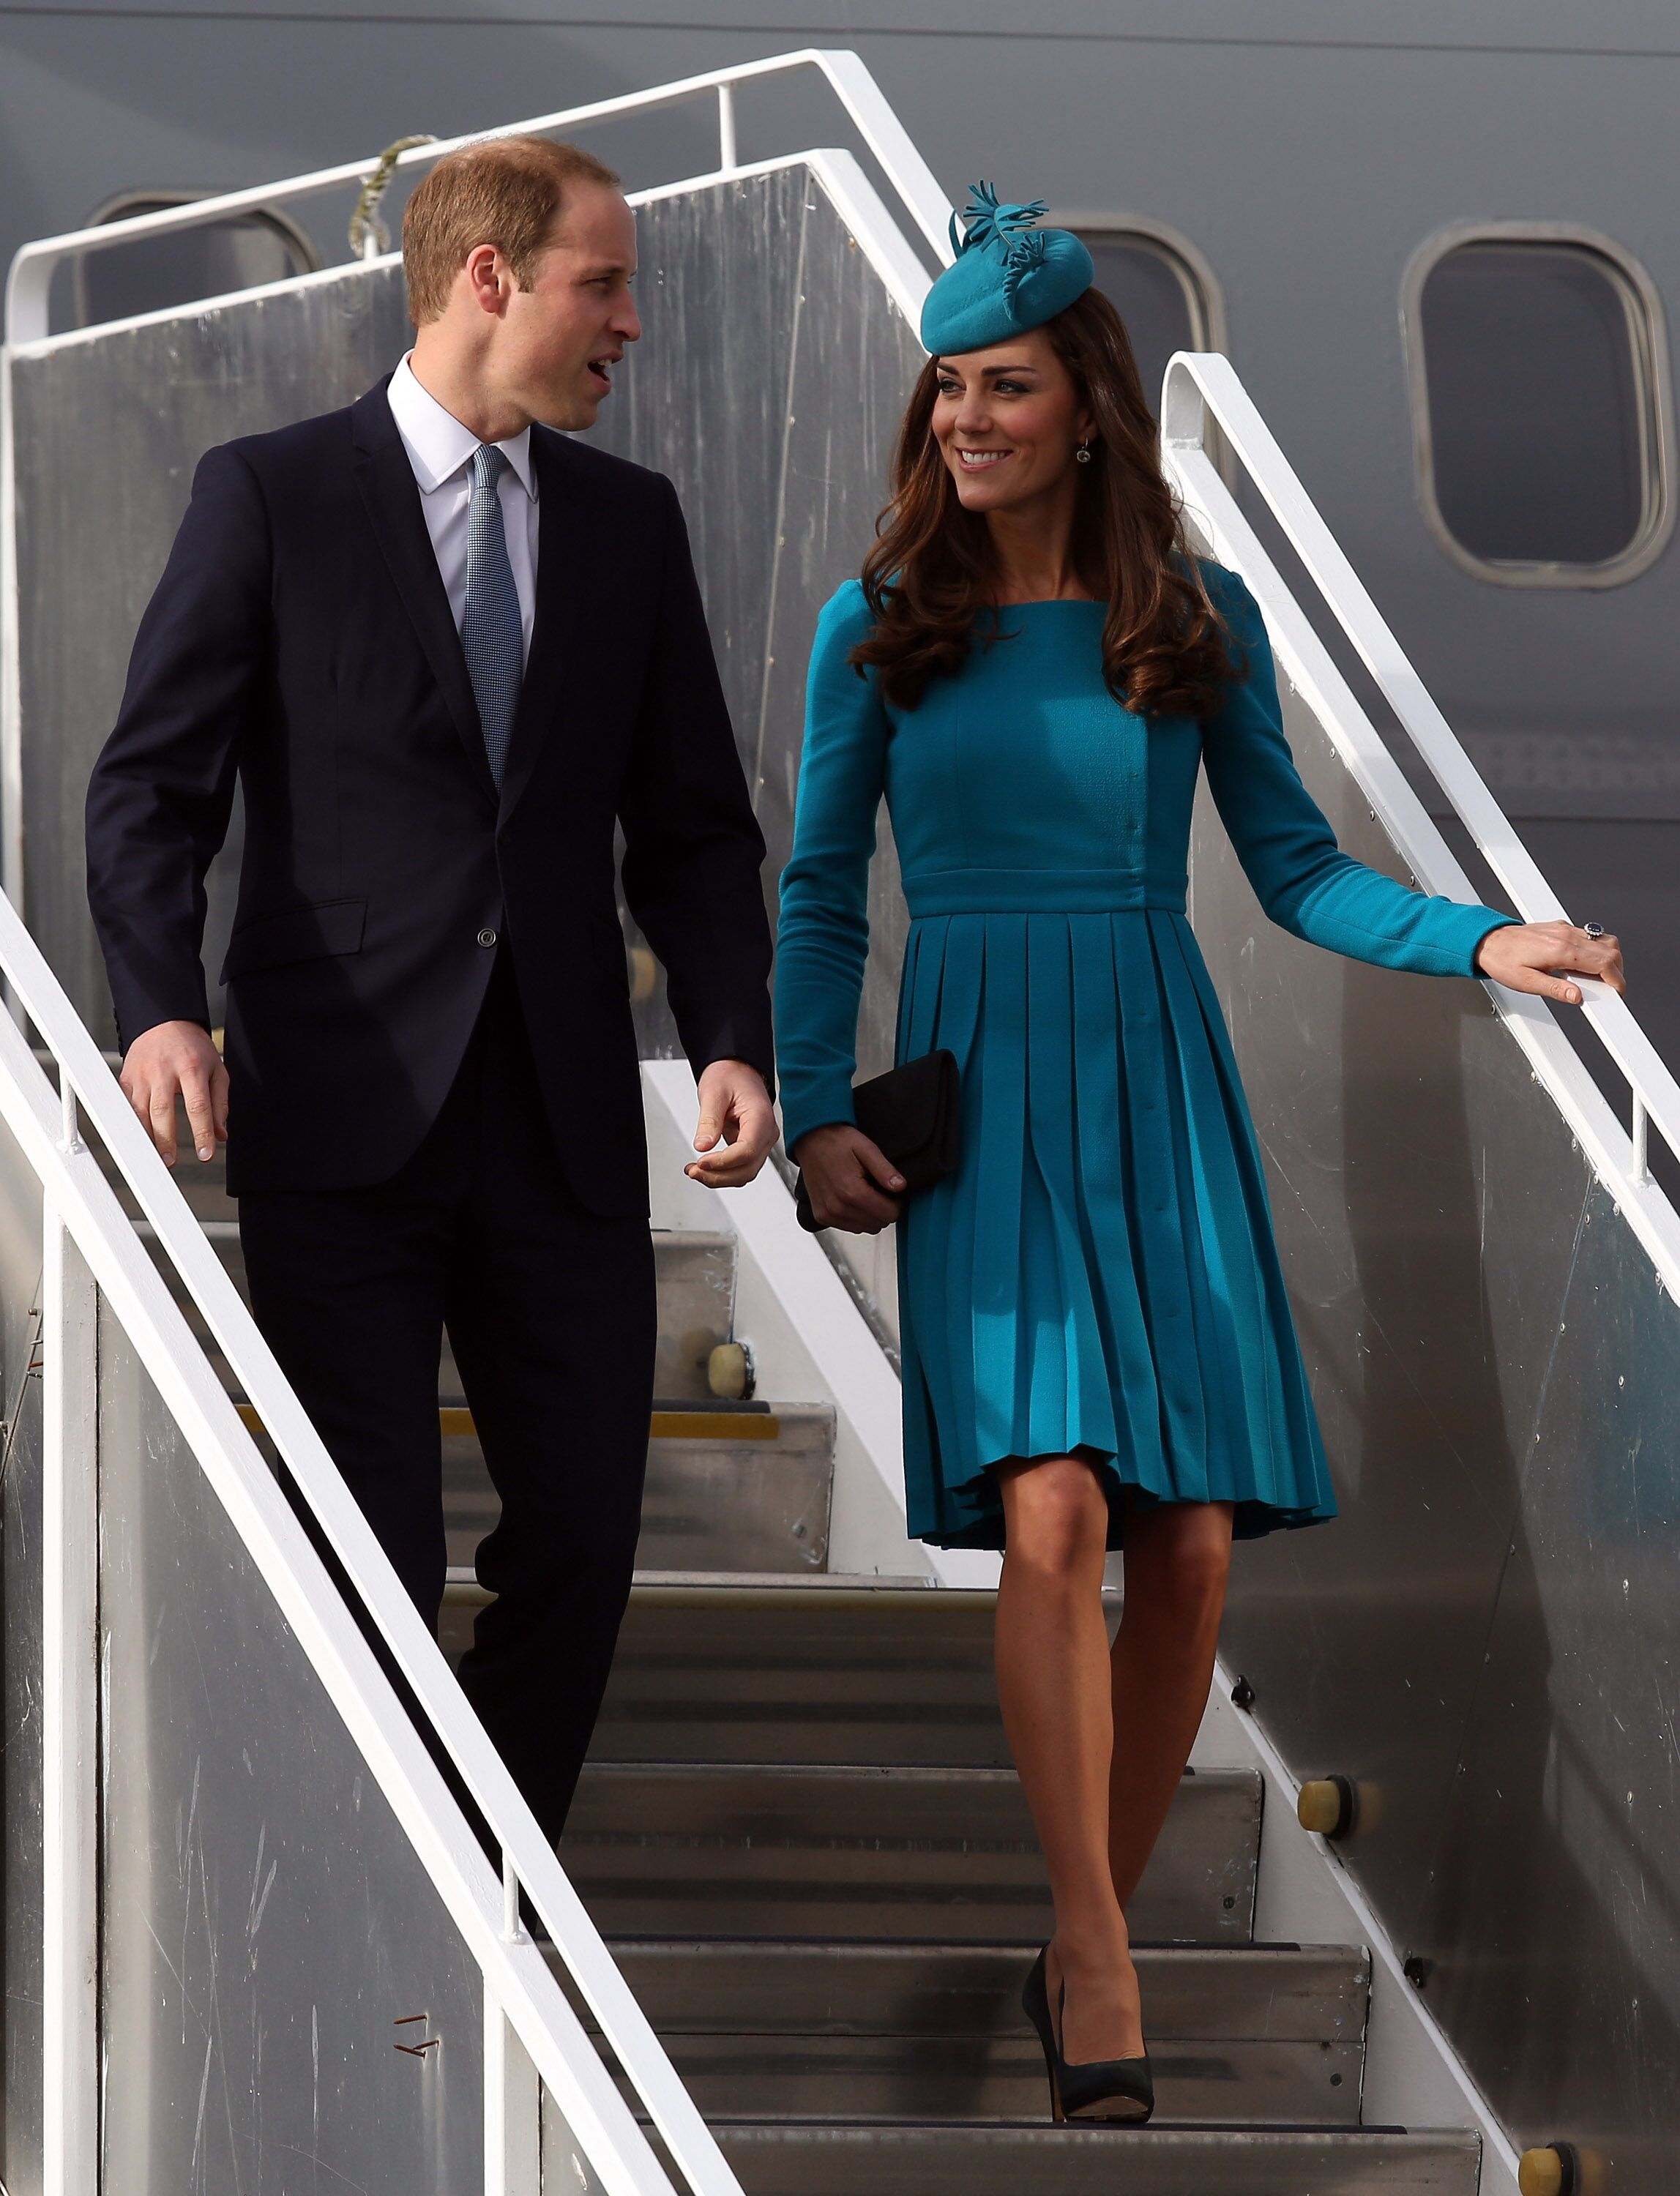 Le Prince William et Kate arrivent à l'aéroport international de Dunedin, en Nouvelle-Zélande. | Photo : Getty Images